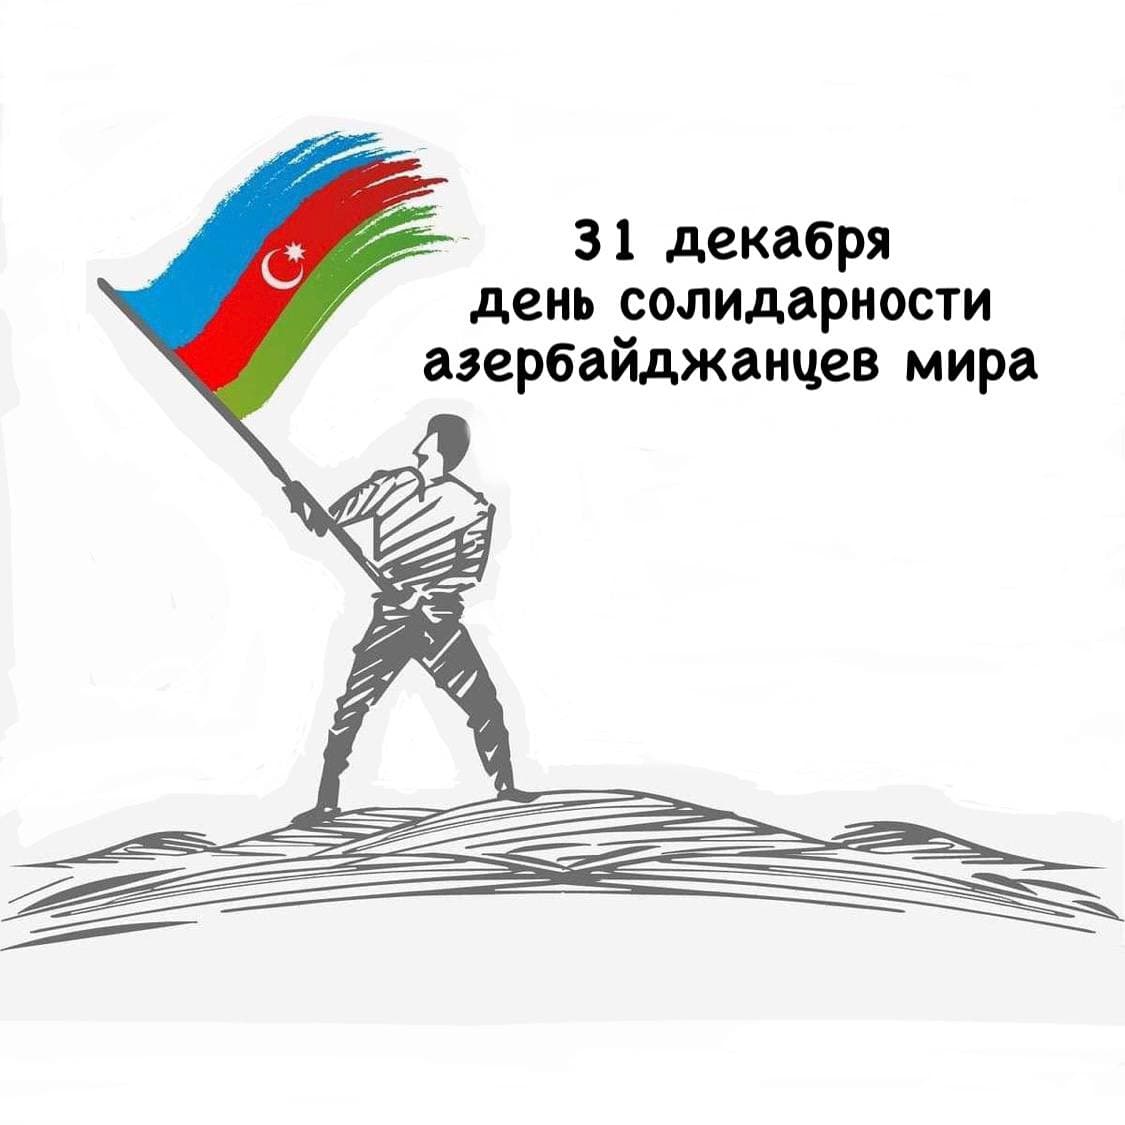 МОО «МААР» сердечно поздравляет с Днем солидарности азербайджанцев мира и с наступающим Новым 2023-м Годом!